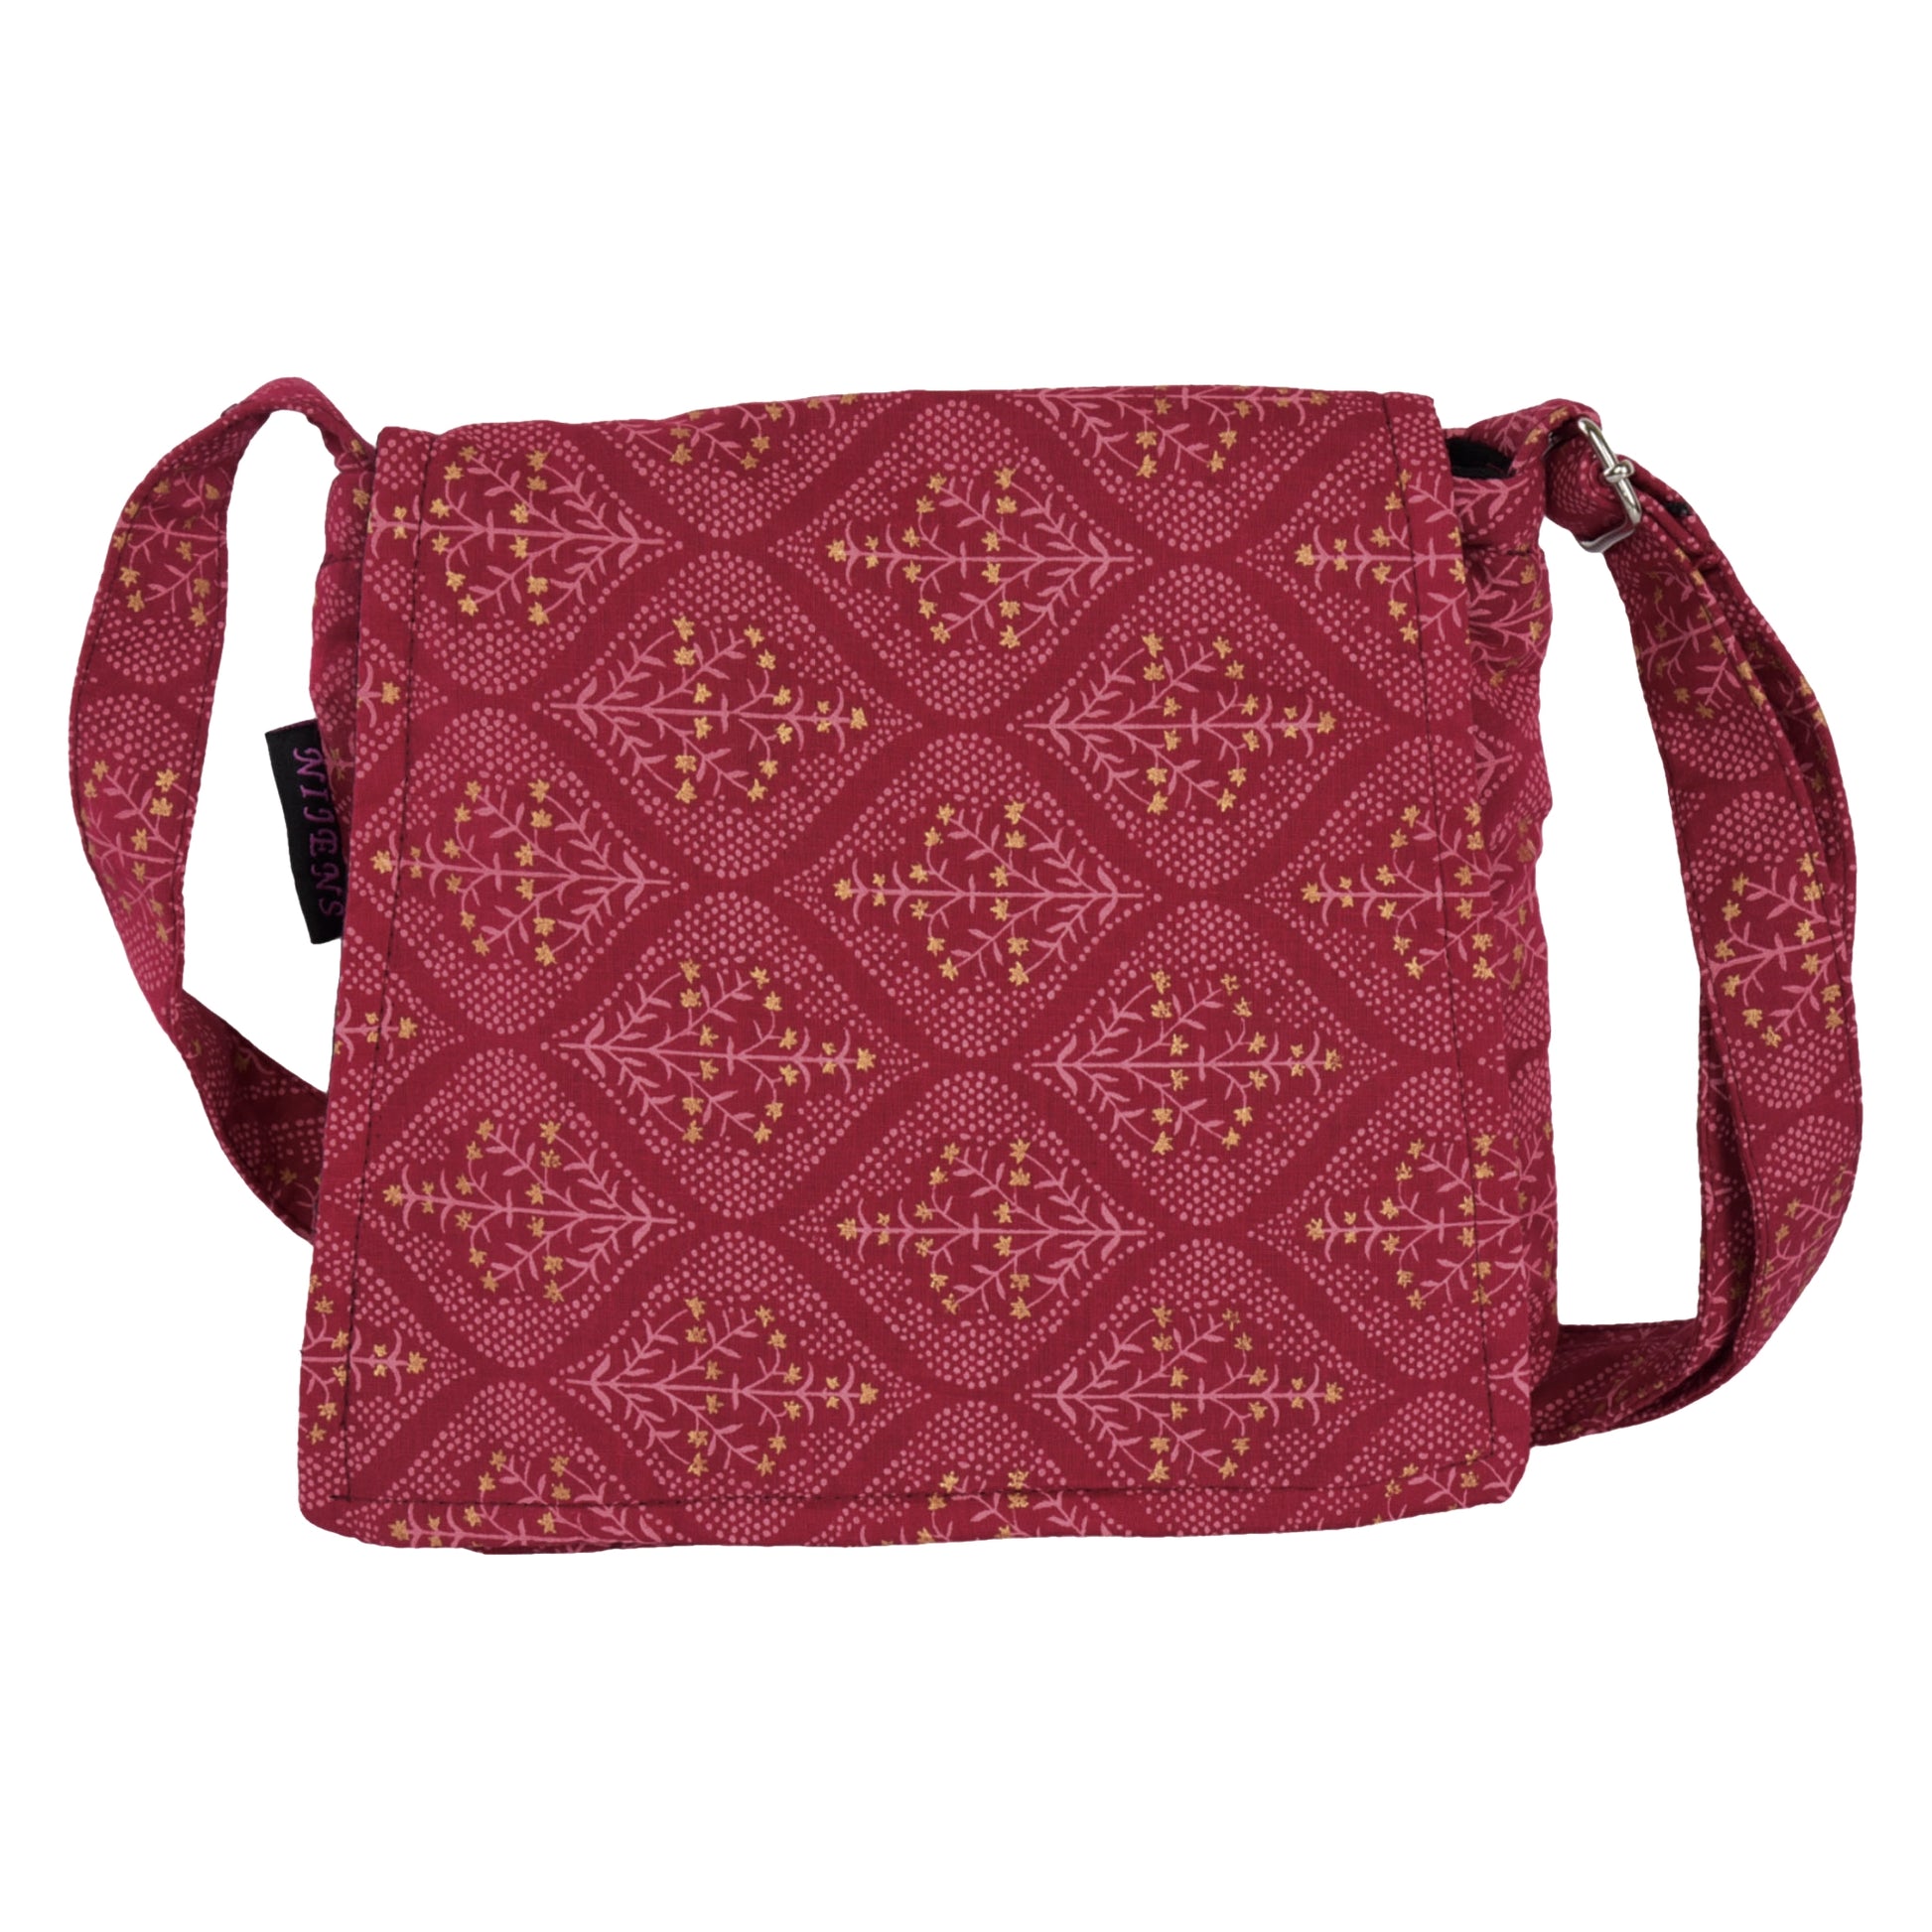 Kleine Tasche, Umhängetasche aus Baumwolle, rot mit gepunkteten Mustern und Sternensträucher. 